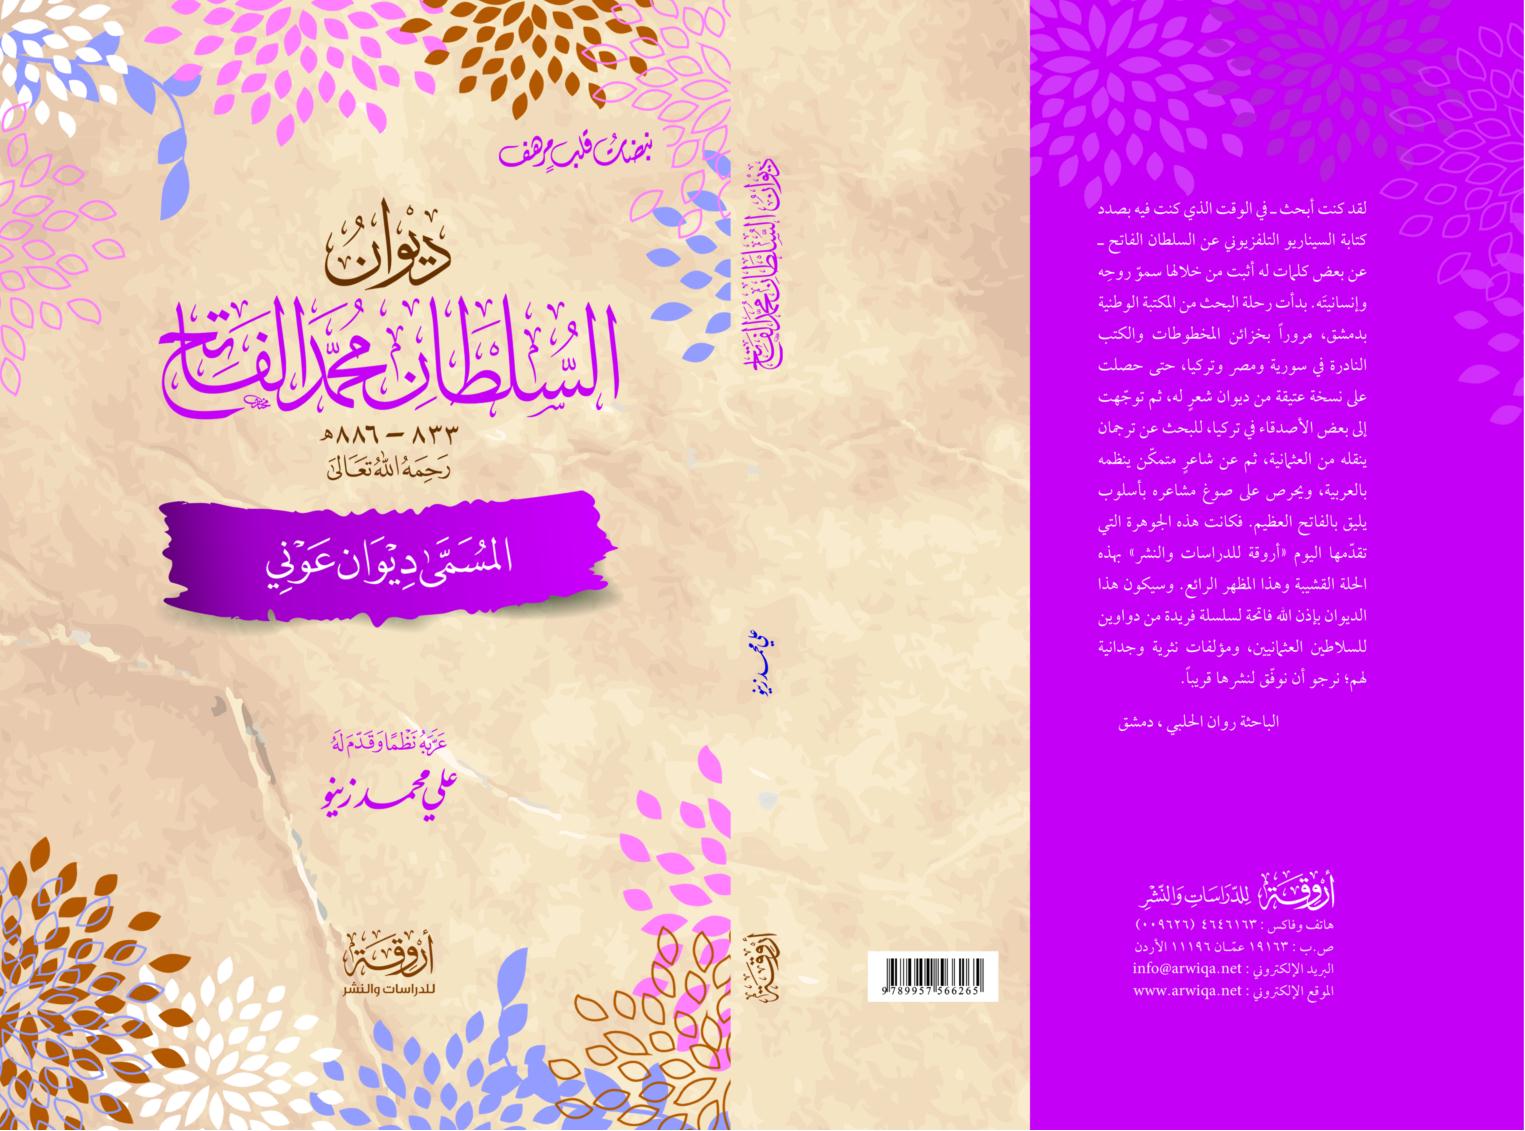 جديد منشورات أروقة للدراسات والنشر، عمان ـ الأردن (متجدد) Arwiqa%20%2815%29